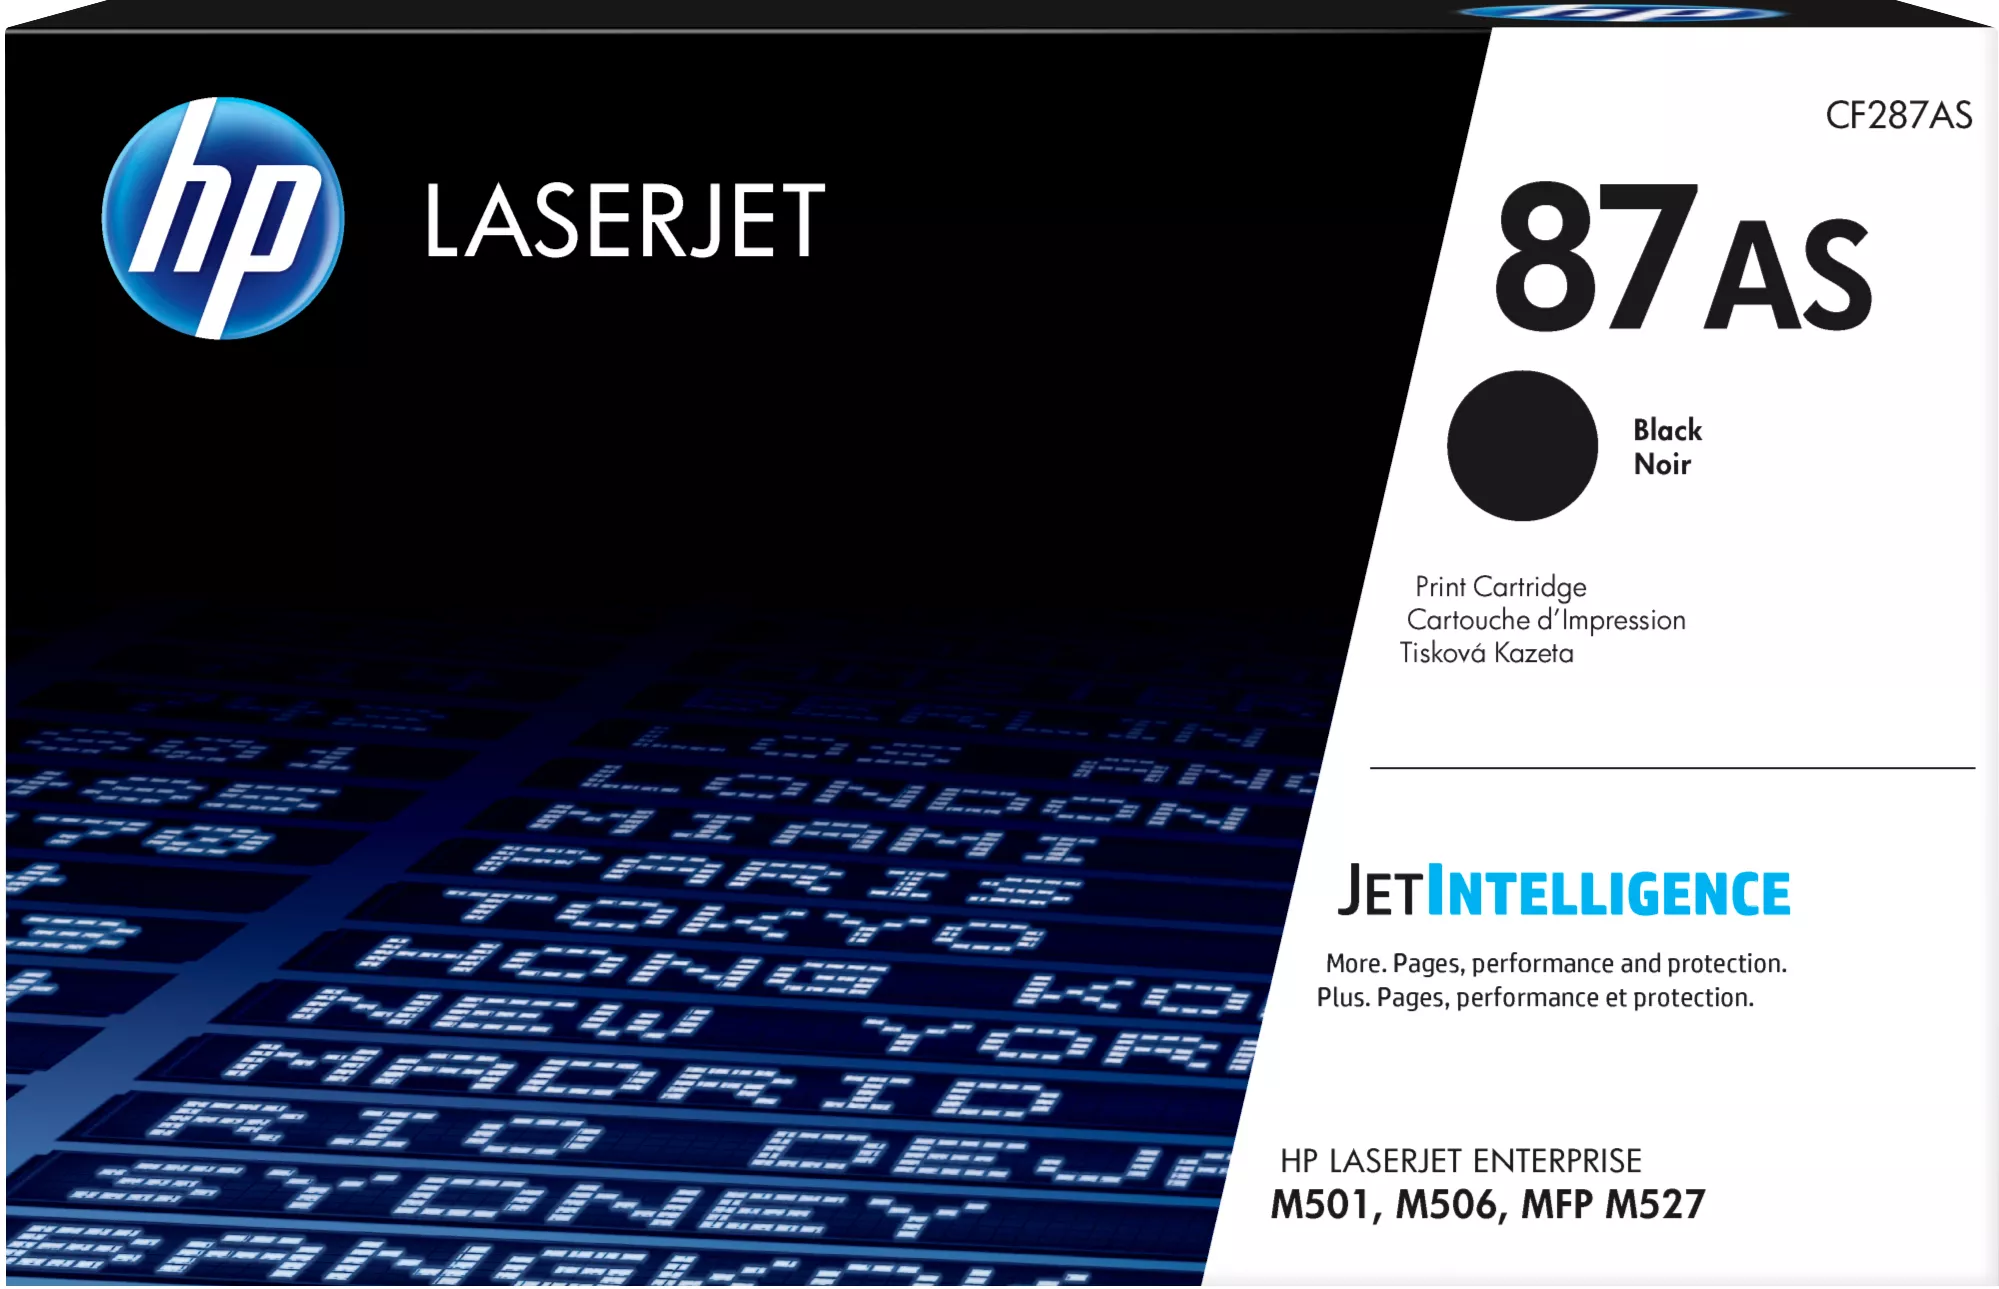 Achat HP 87AS toner LaserJet noir authentique au meilleur prix